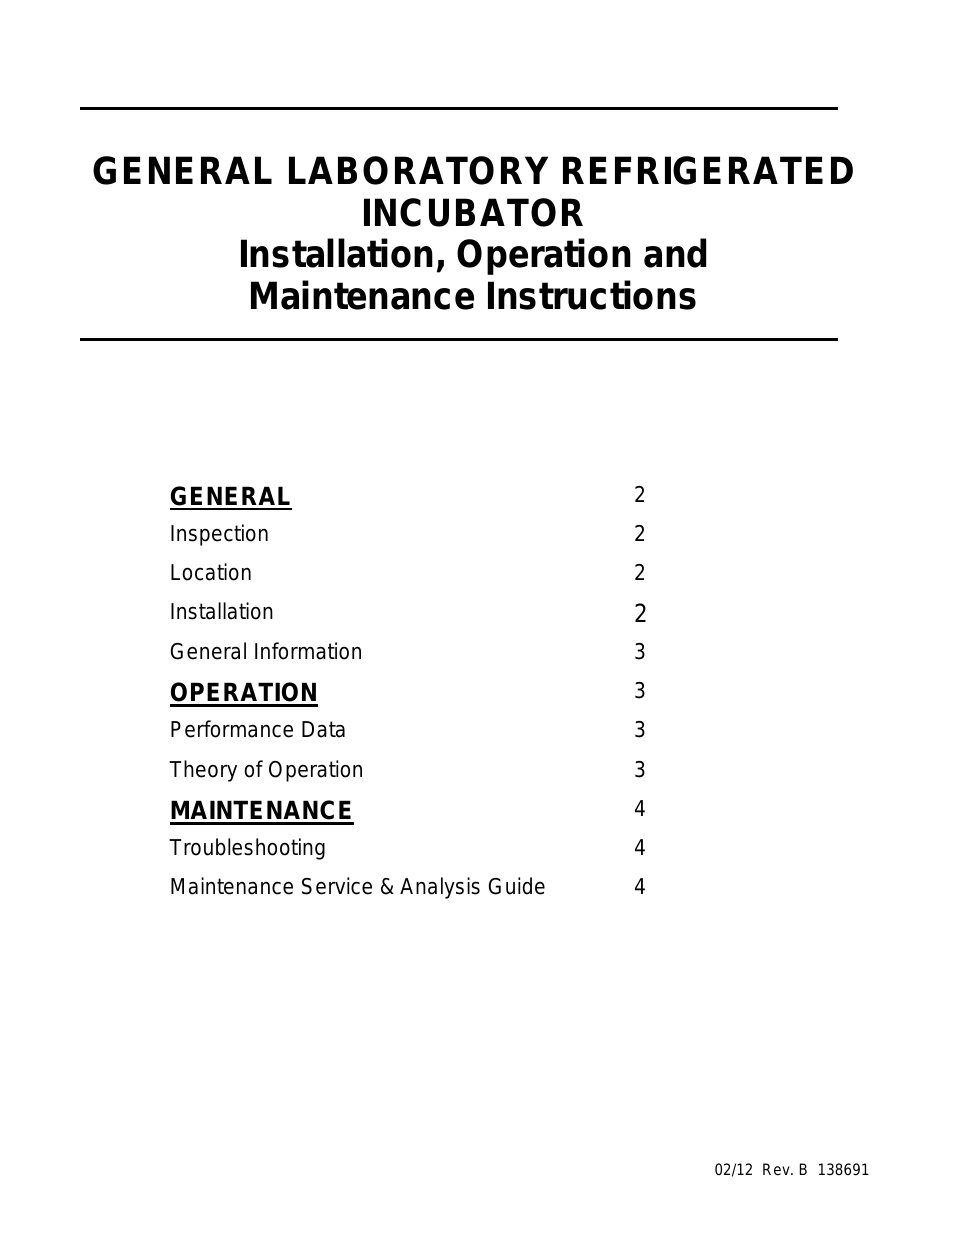 General Lab Incubator